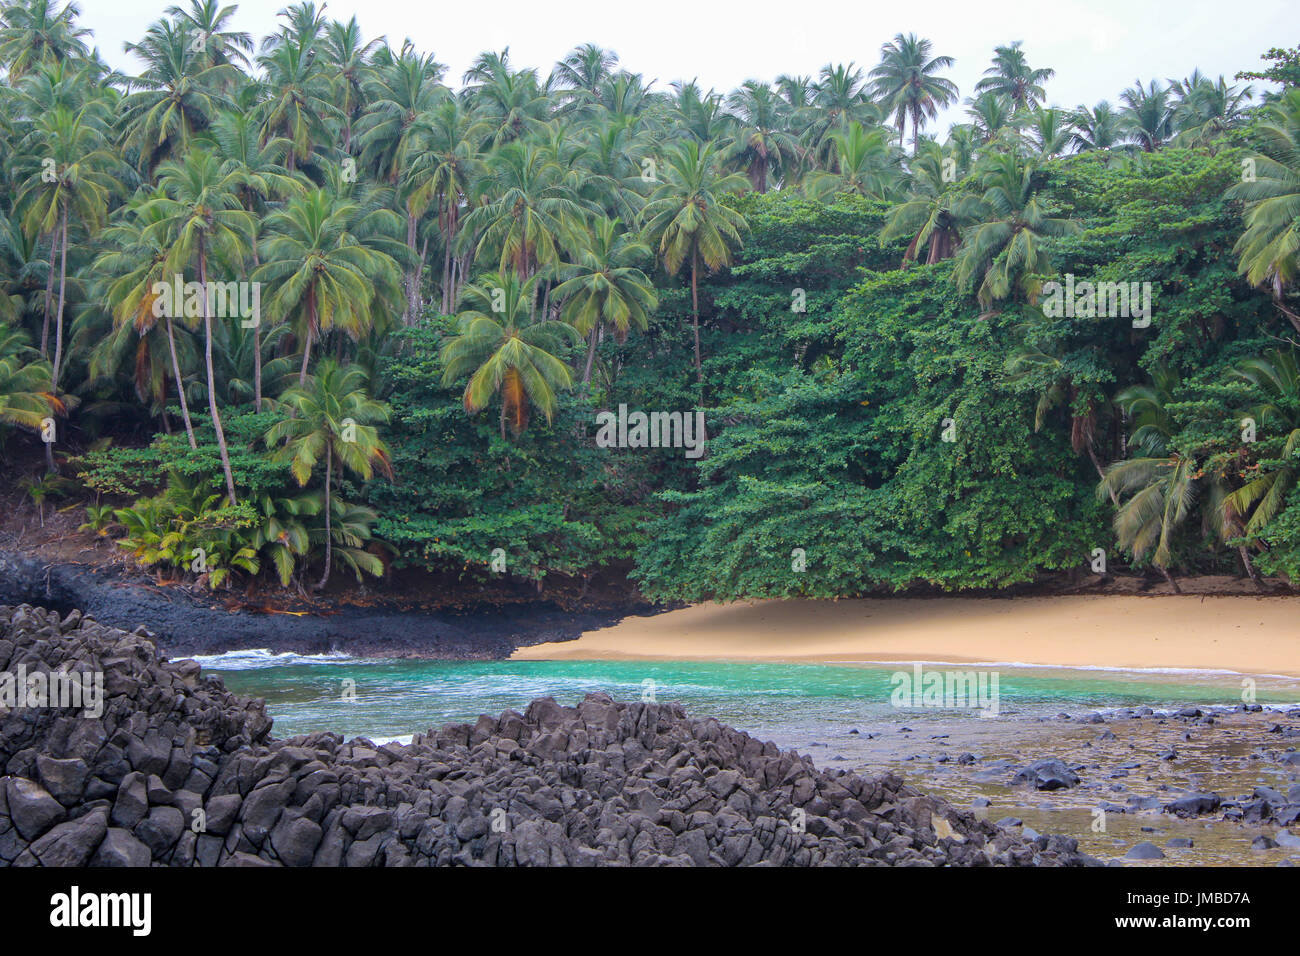 La belle plage Piscina en île de Sao Tomé et Principe - Afrique Banque D'Images